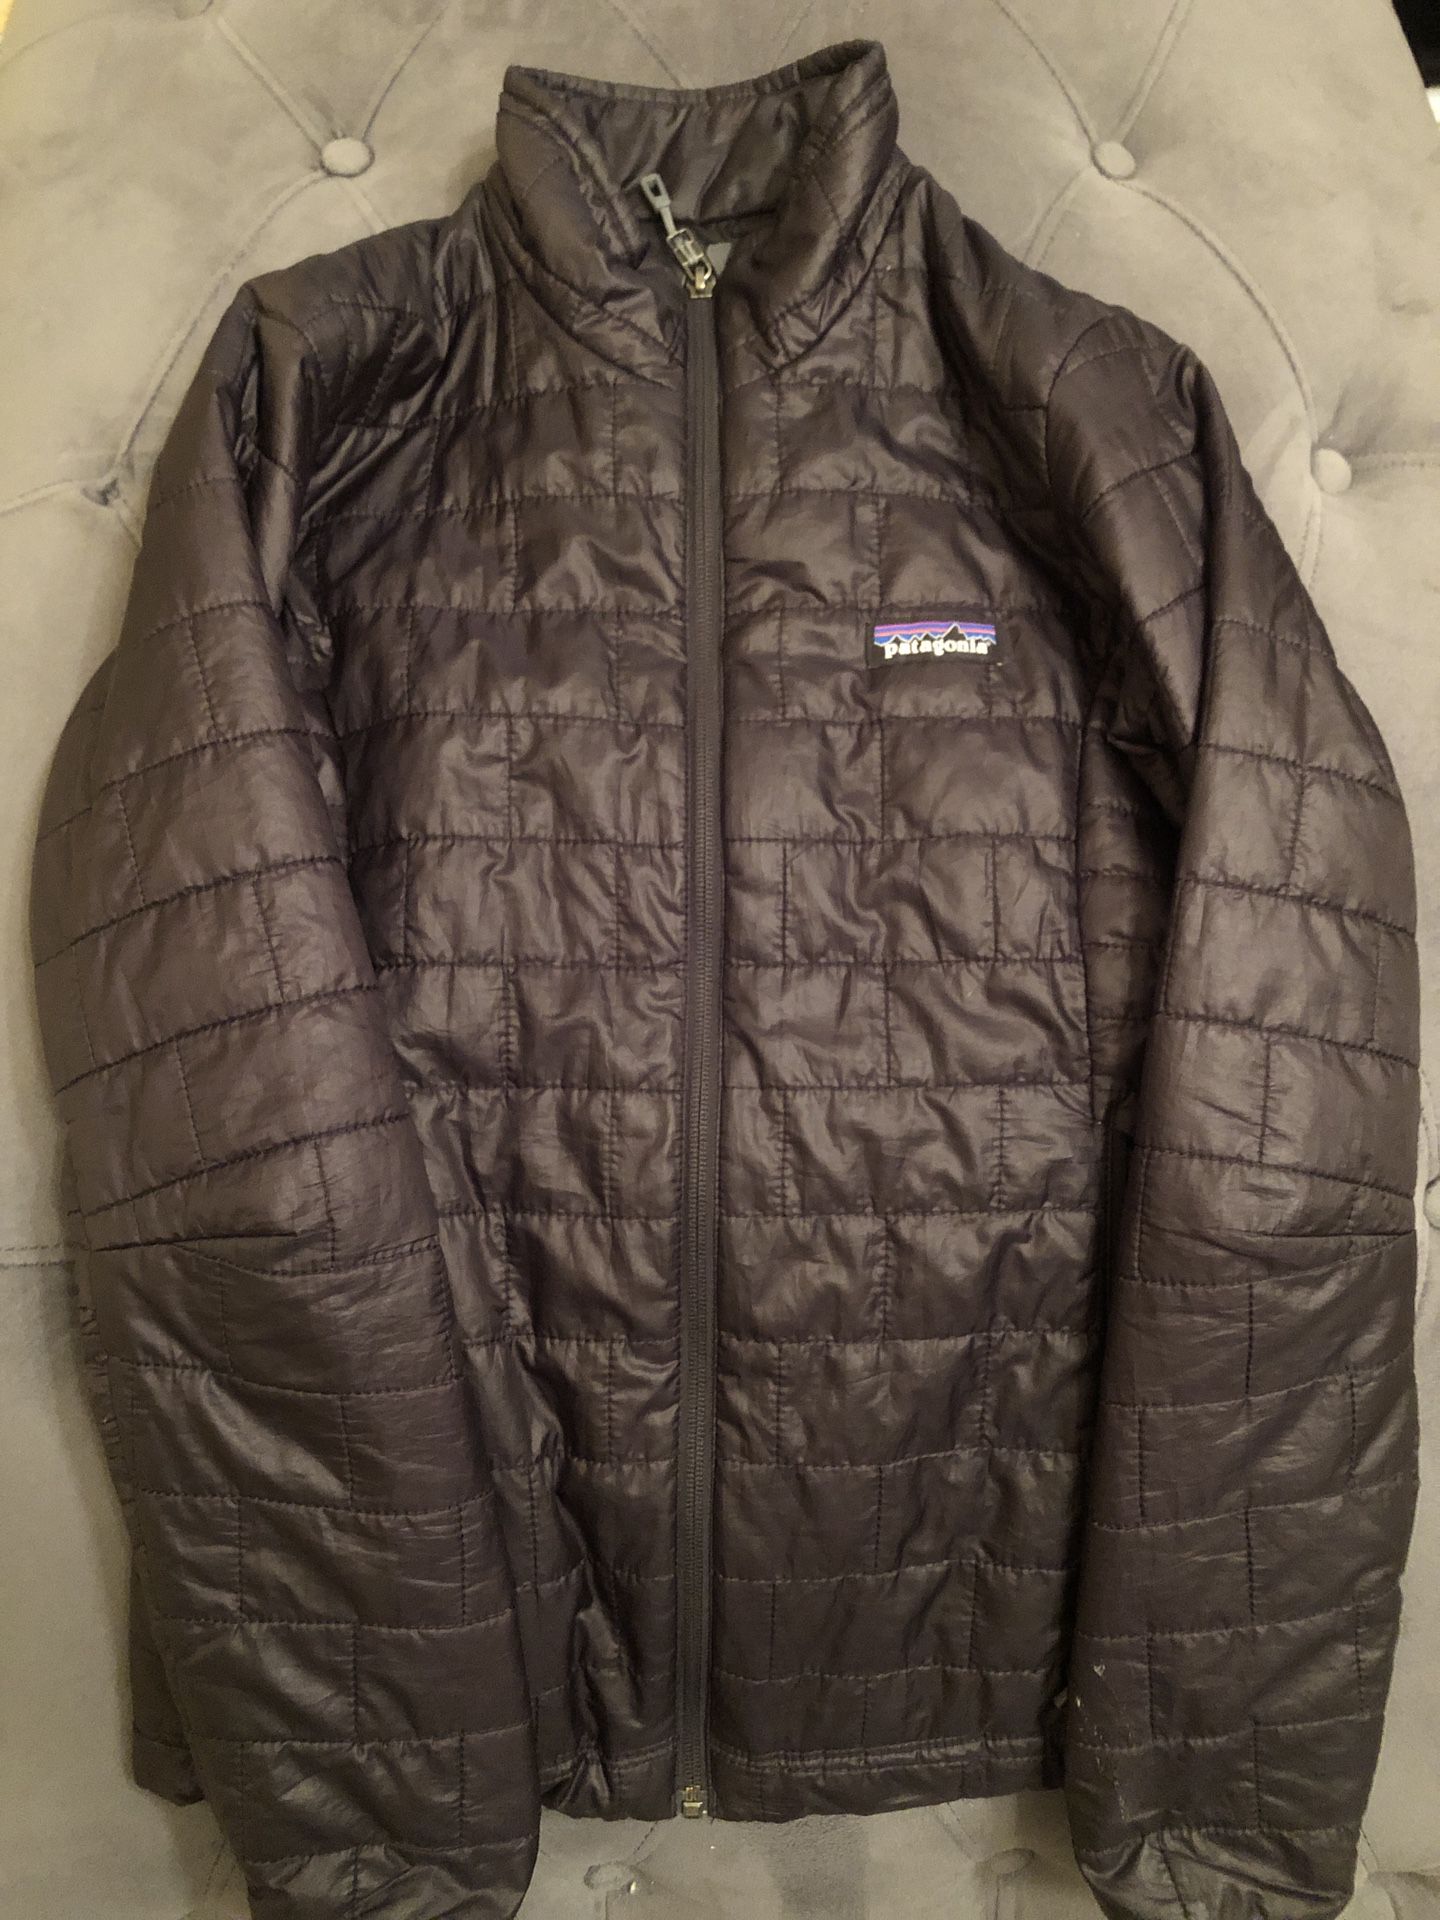 Patagonia jacket